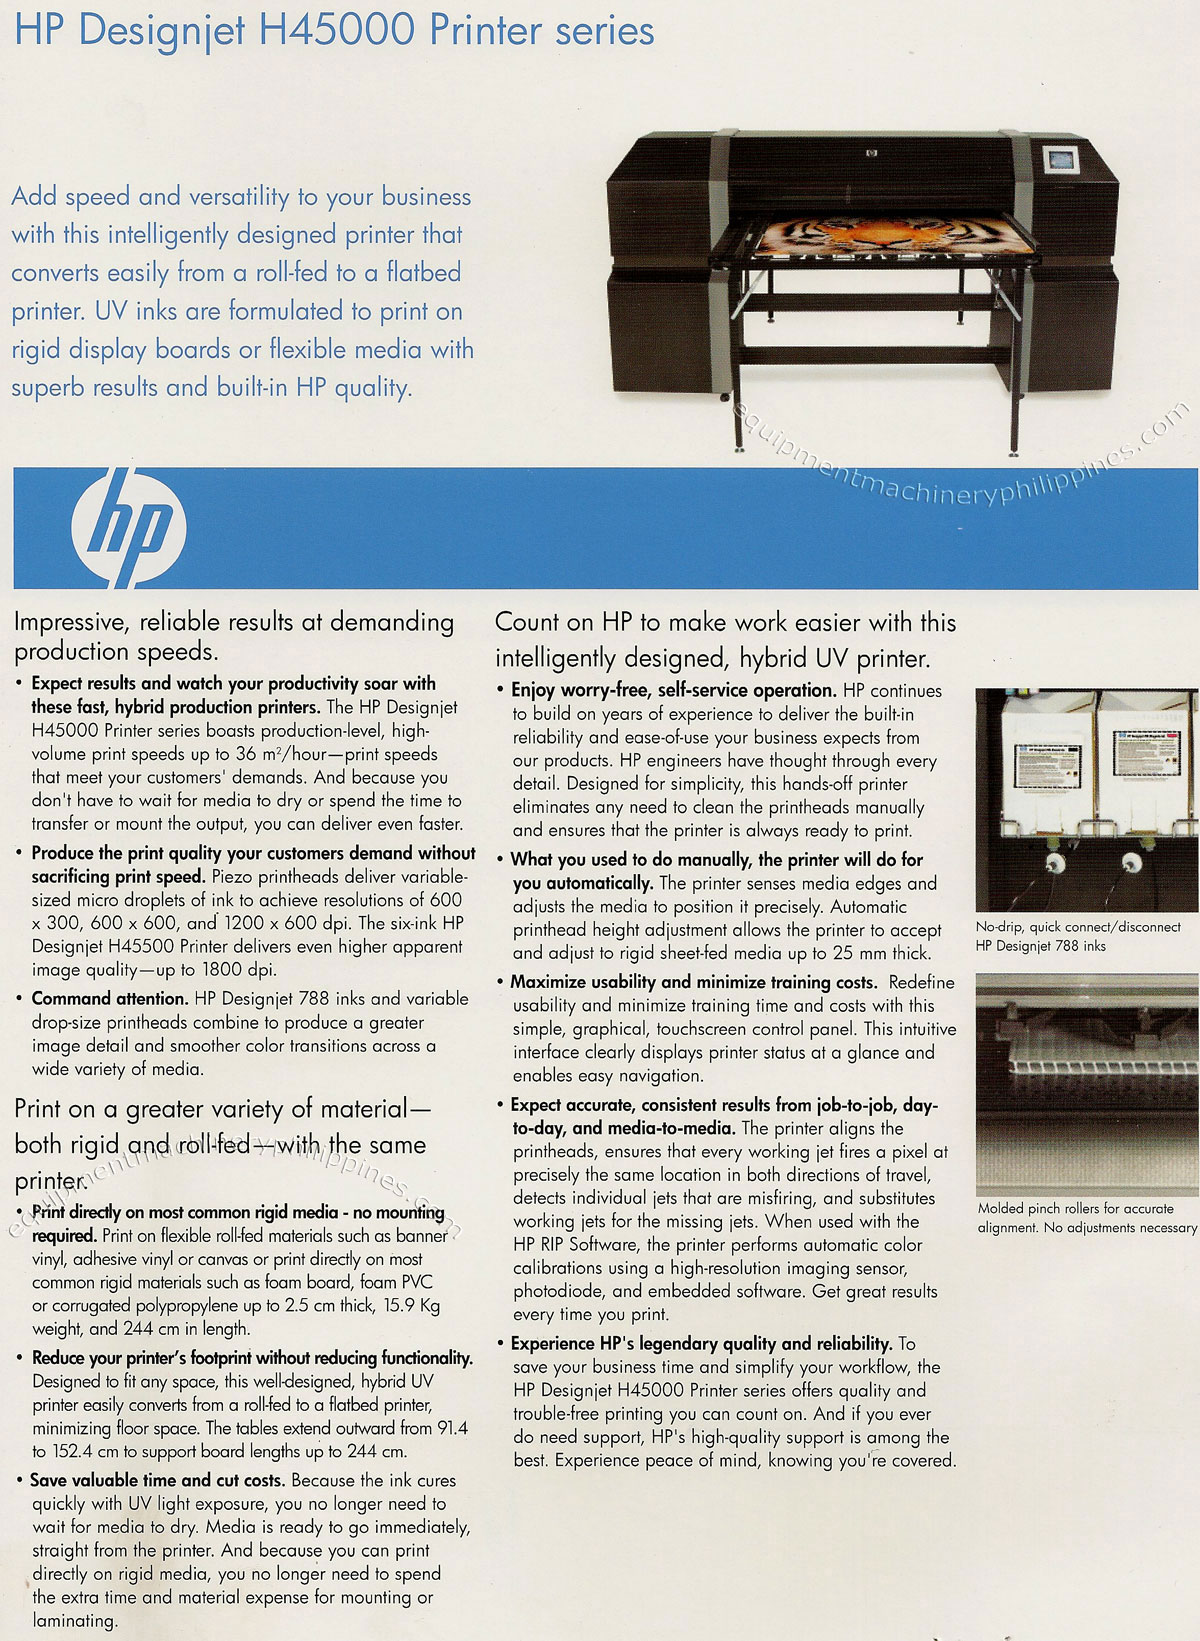 HP Designjet H45000 Printer Series